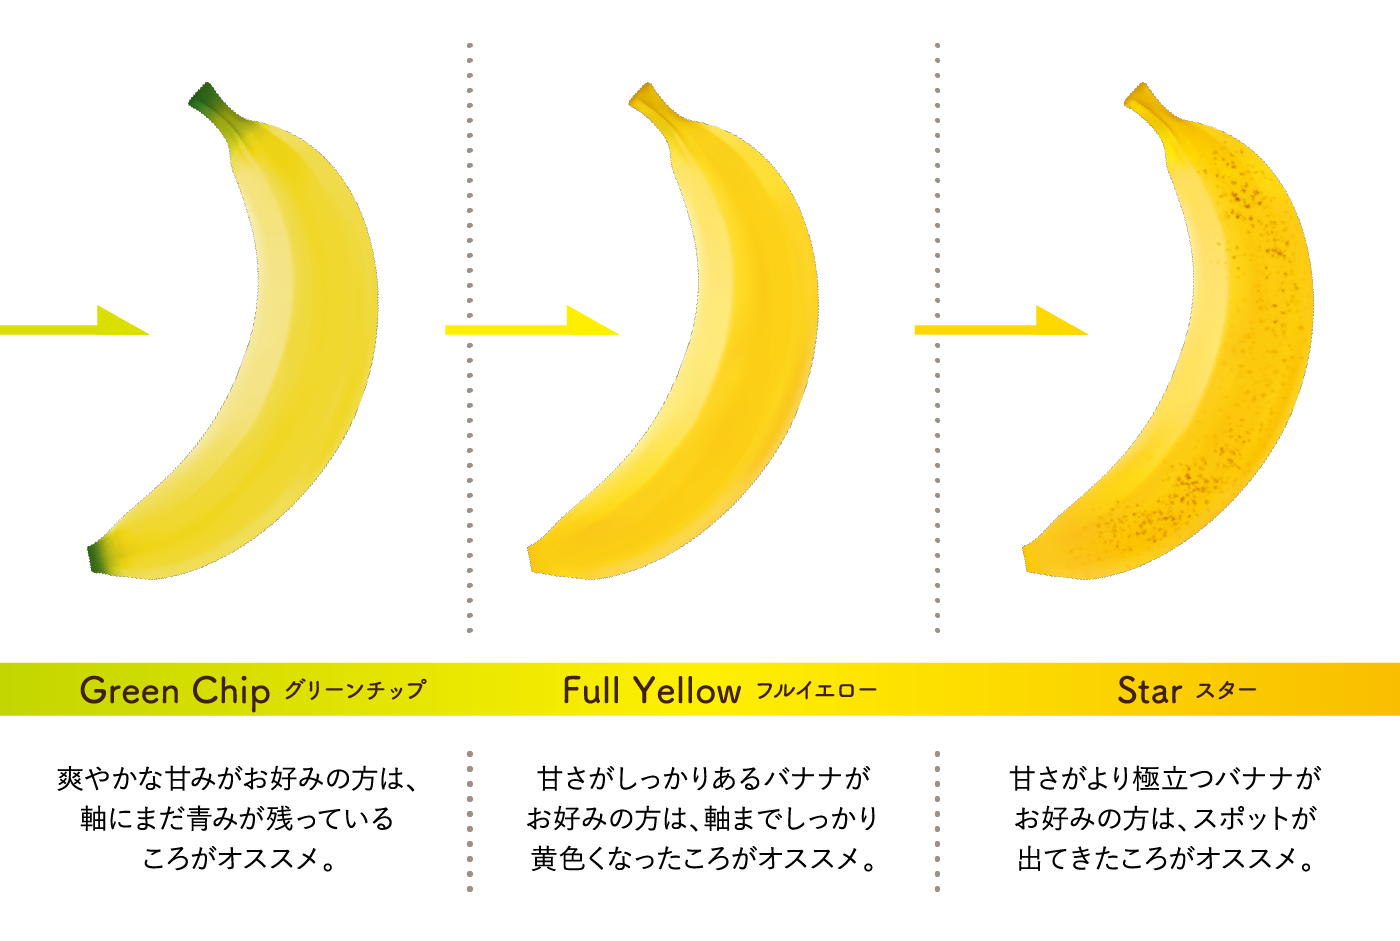 Green Chip グリーンチップ：爽やかな甘みがお好みの方は、軸にまだ青みが残っているころがオススメ。　Full Yellow フルイエロー：甘さがしっかりあるバナナがお好みの方は、軸までしっかり黄色くなったころがオススメ。　Star スター：甘さがより極立つバナナがお好みの方は、スポットが出てきたころがオススメ。